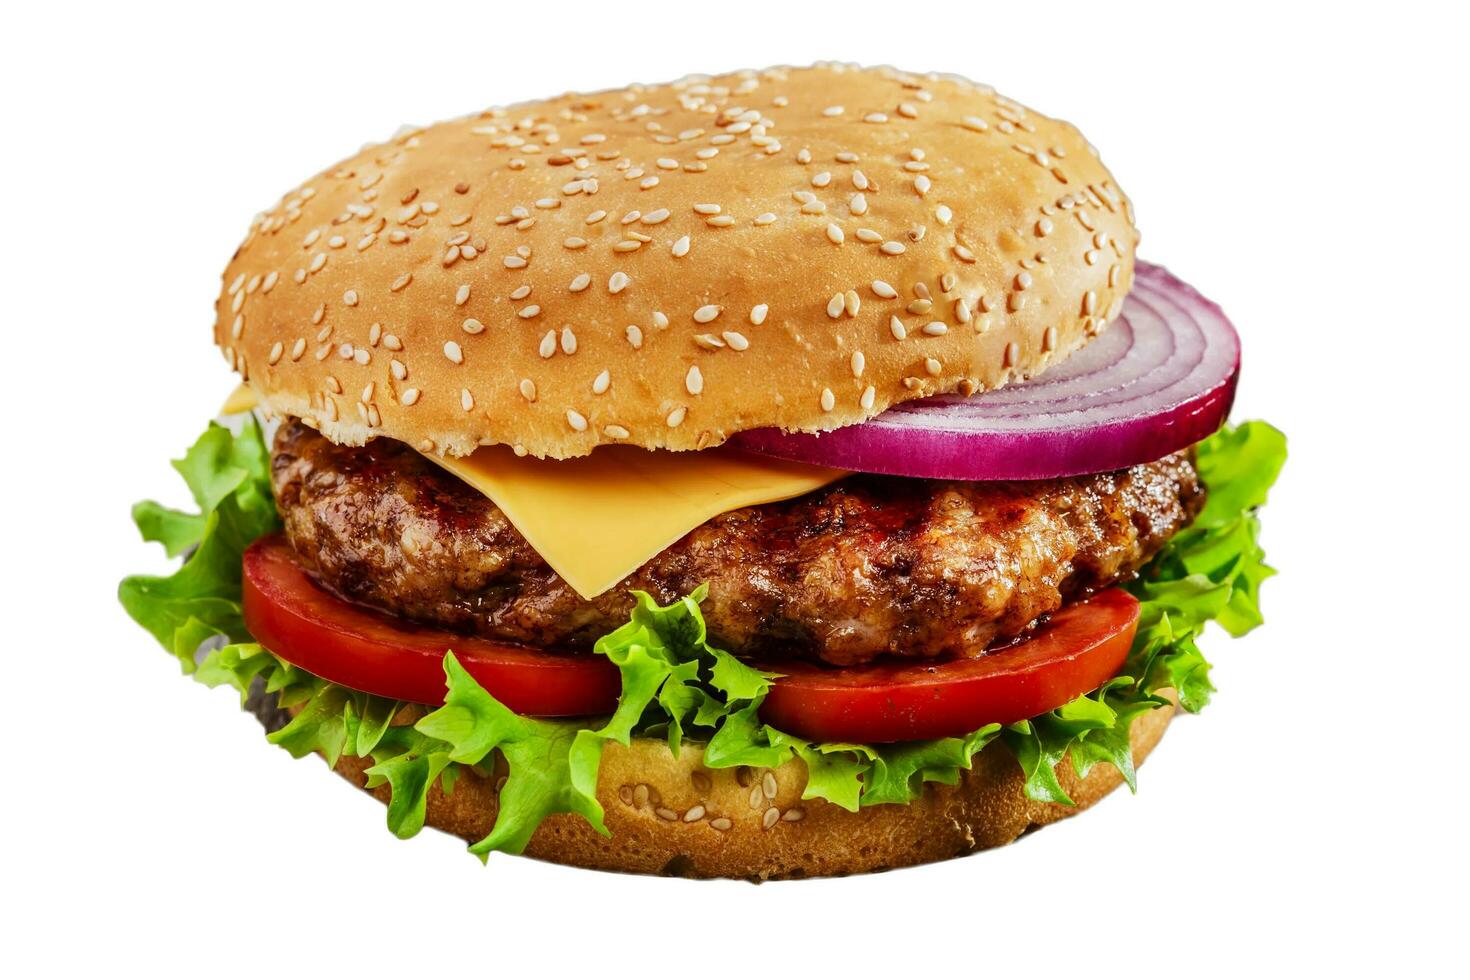 brommen hamburger, kaas hamburger, groente hamburger, Fast food, rundvlees hamburger, ui, brood, ketchup foto